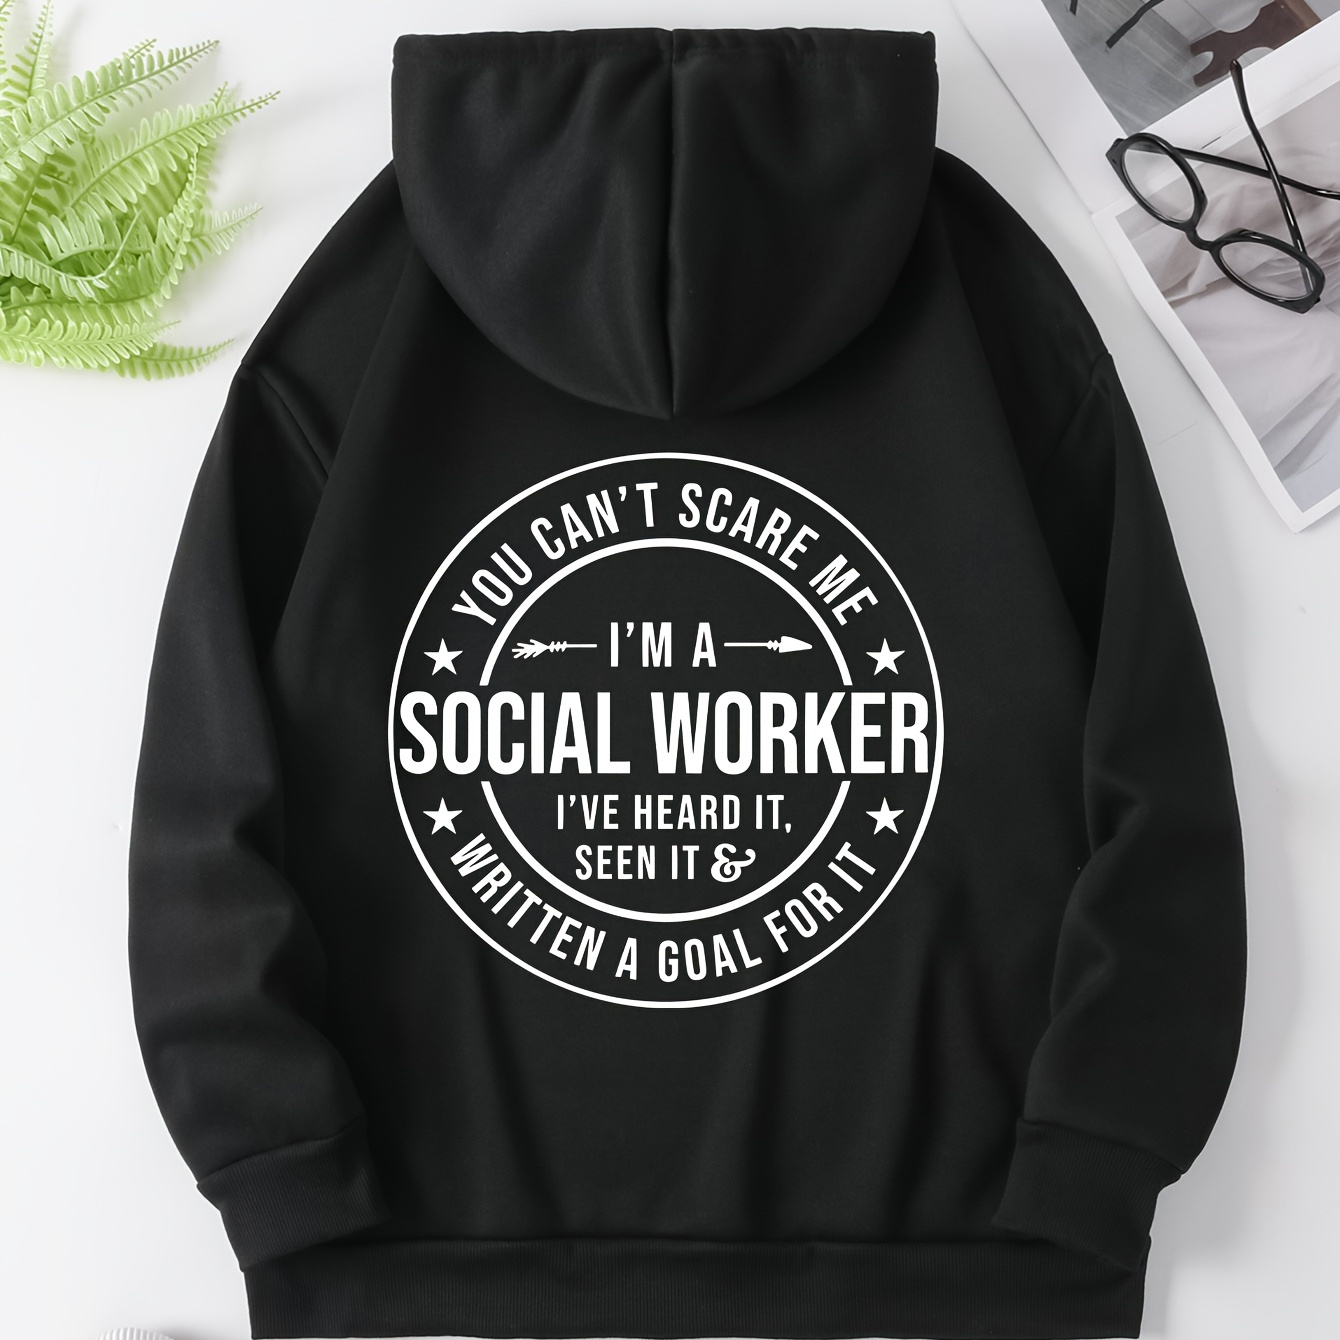 

Social Worker Print Kangaroo Pocket Hoodie, Casual Long Sleeve Drawstring Hooded Sweatshirt, Women's Clothing